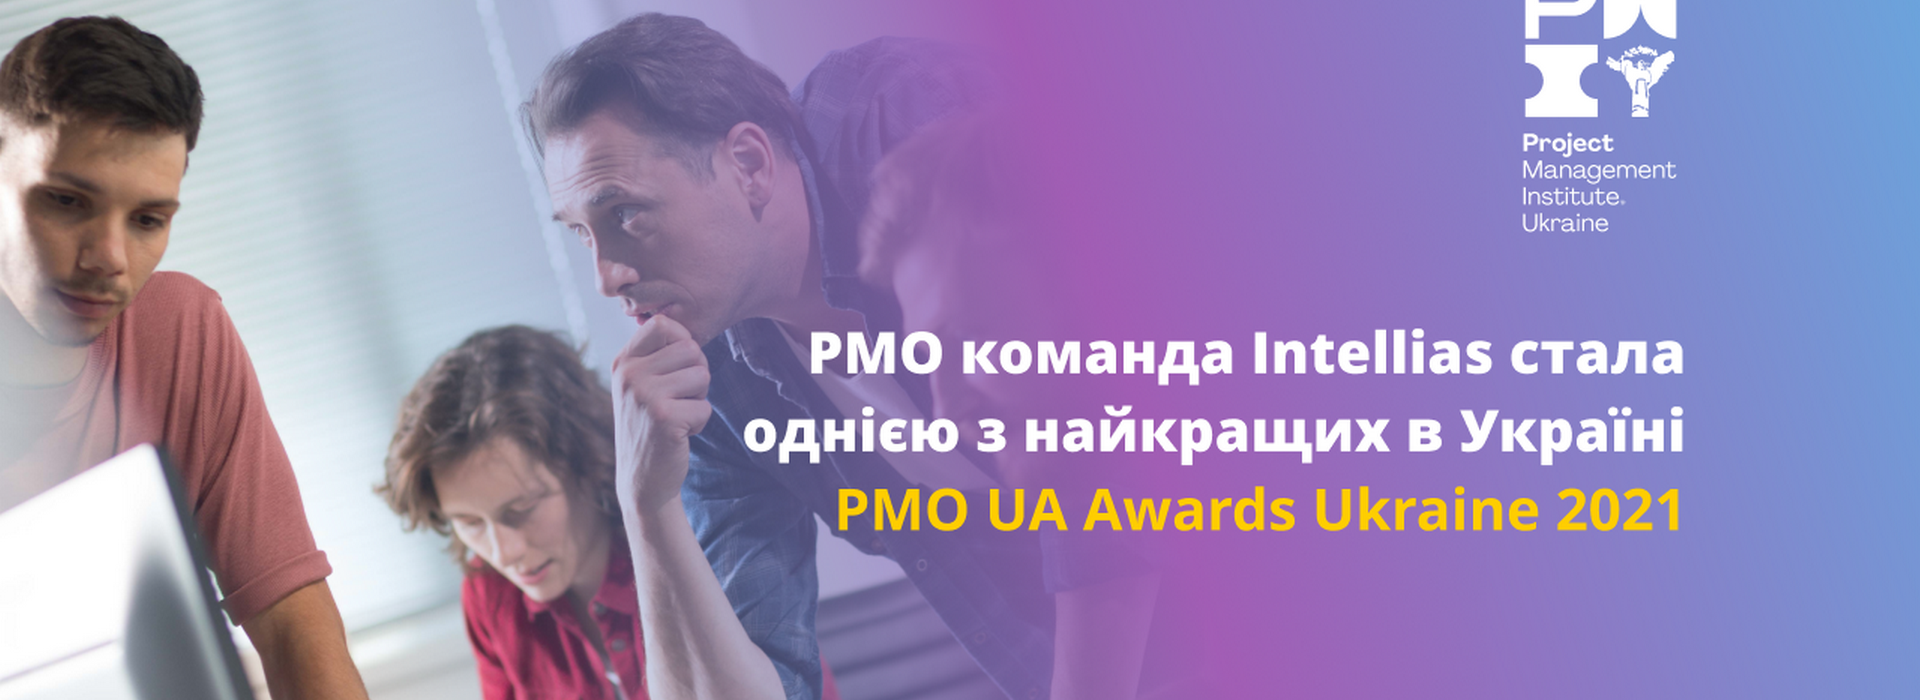 Project Management Office компанії Intellias визнано одним з найкращих в Україні